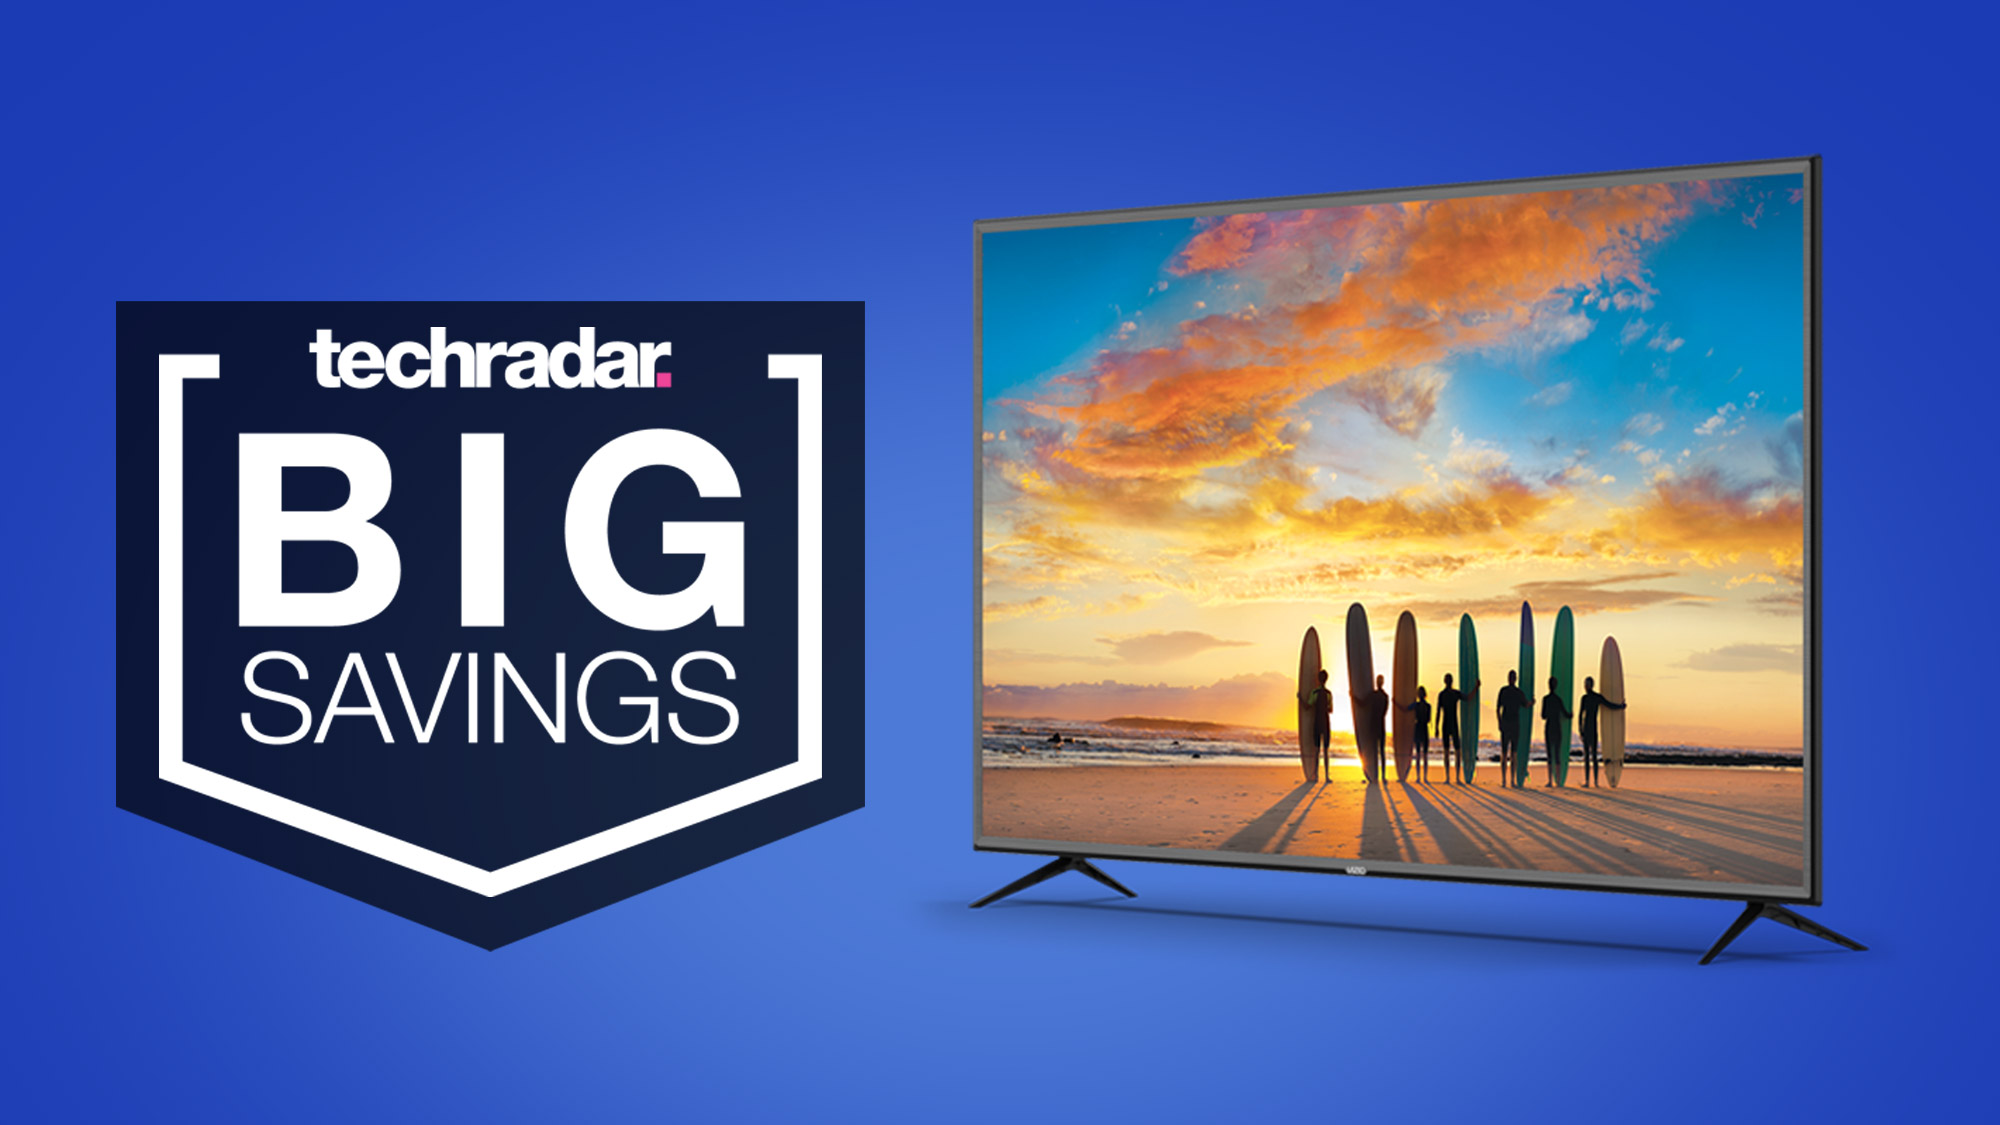 Cheap Tv Deal This Vizio 50 Inch 4k Tv Gets A Massive 380 Price Cut At Walmart Techradar